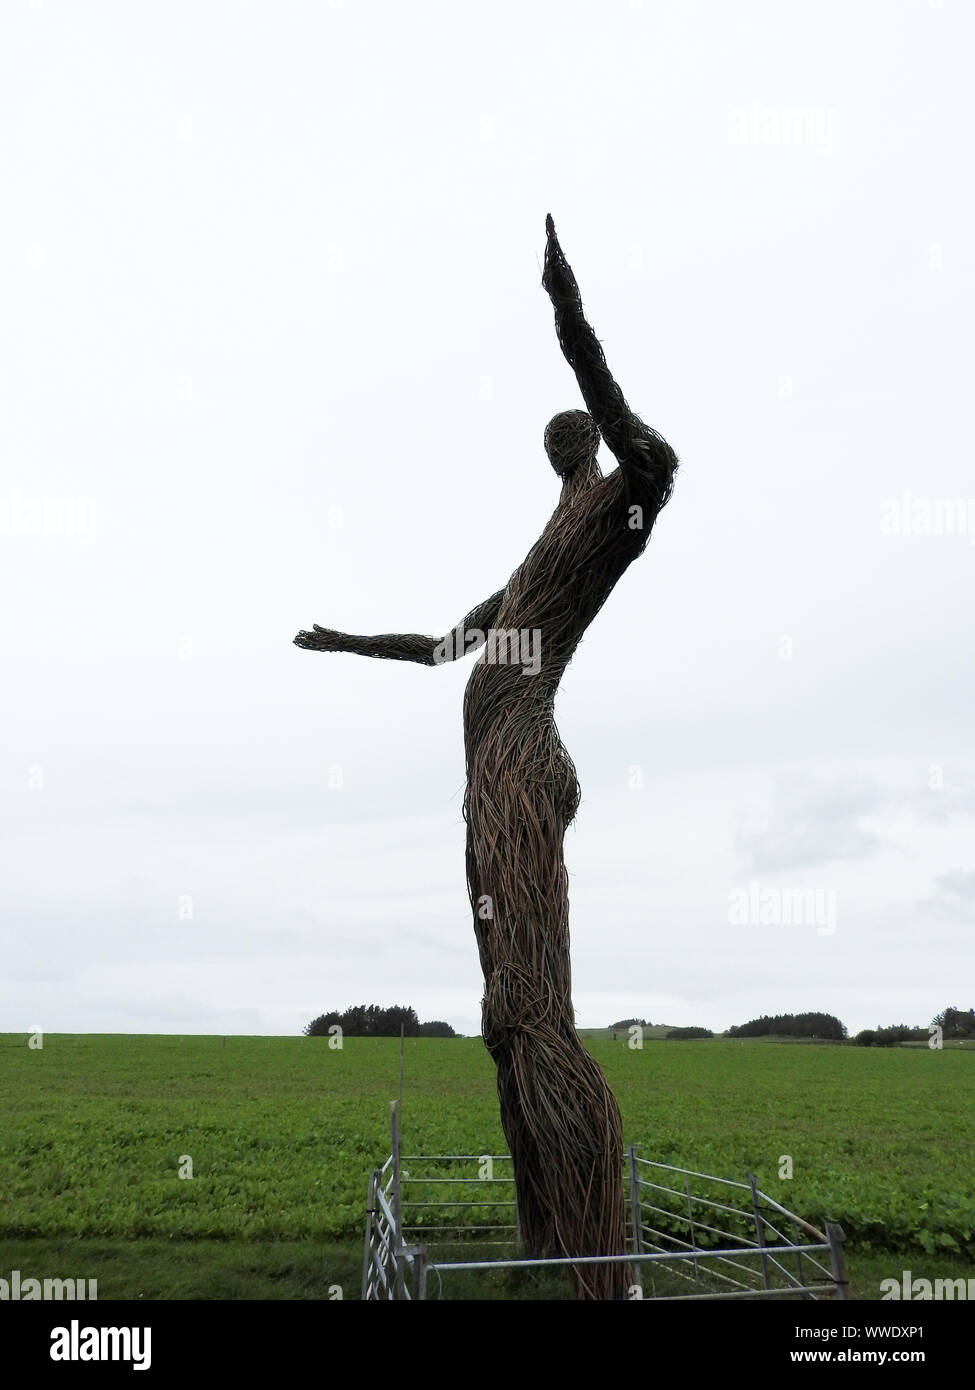 2019 - La imagen de una vista lateral de la enorme figura en el Wickerman Wickerman Festival Dunfrennan, campo cerca de Dumfries y Galloway. (Rodeada por una valla de agricultores normal) Foto de stock